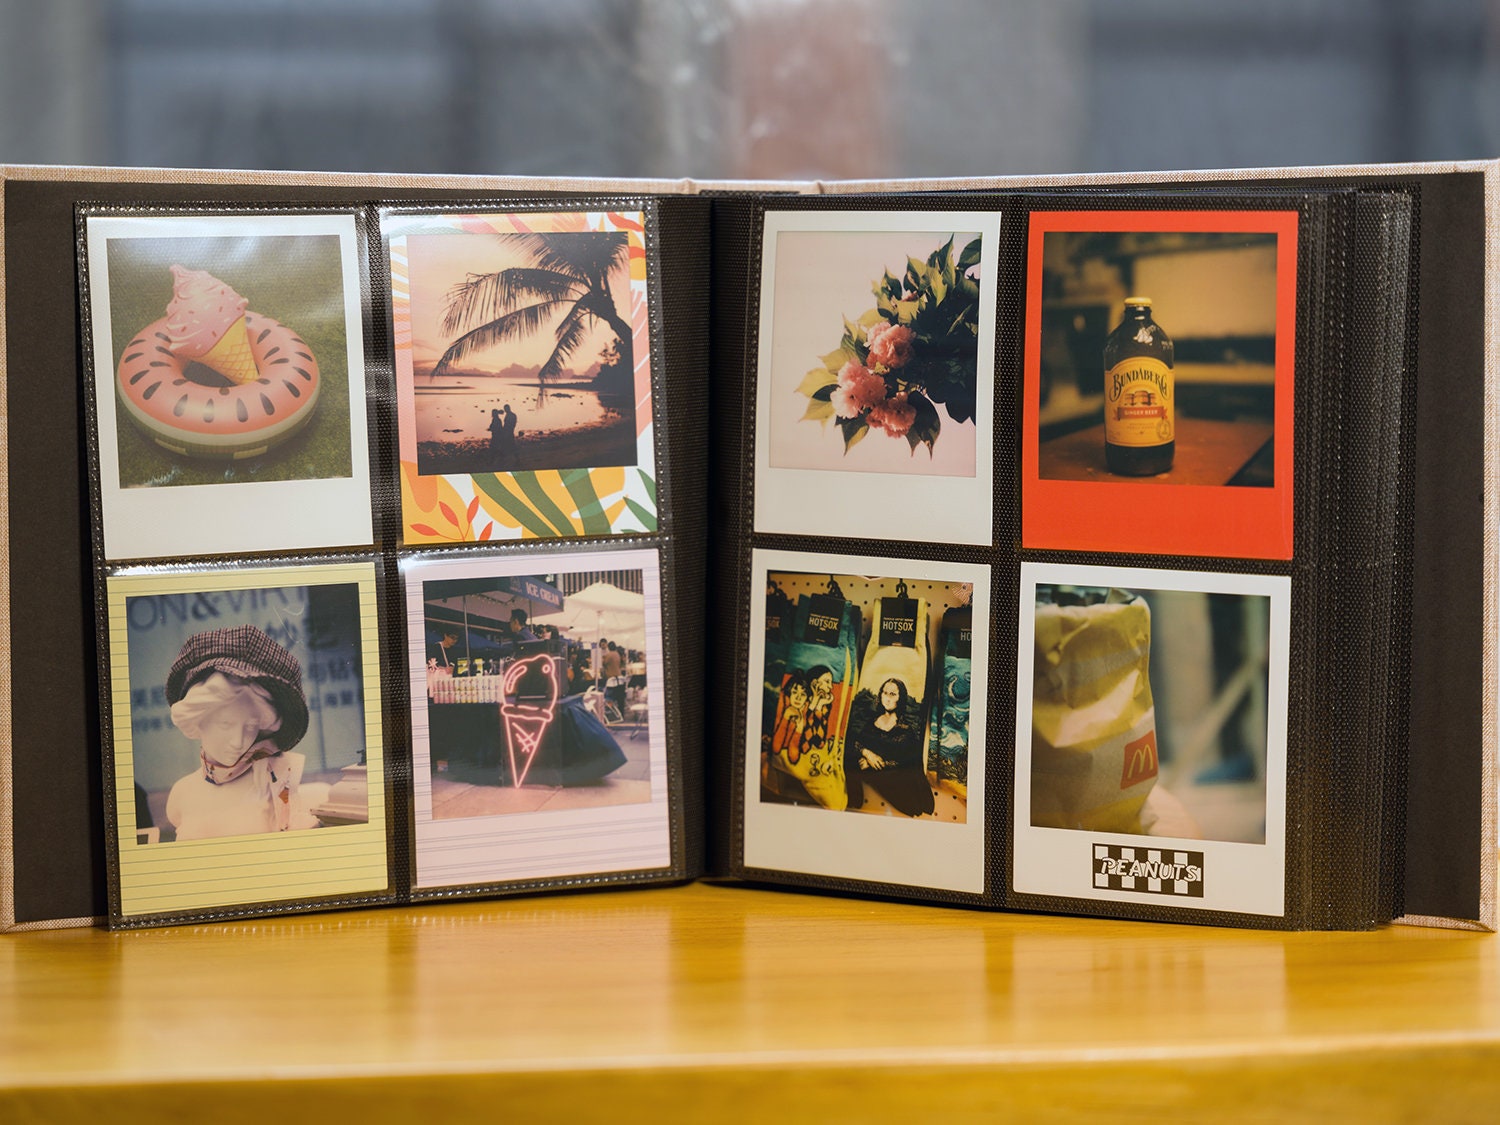 Polaroid Scrapbook Album 